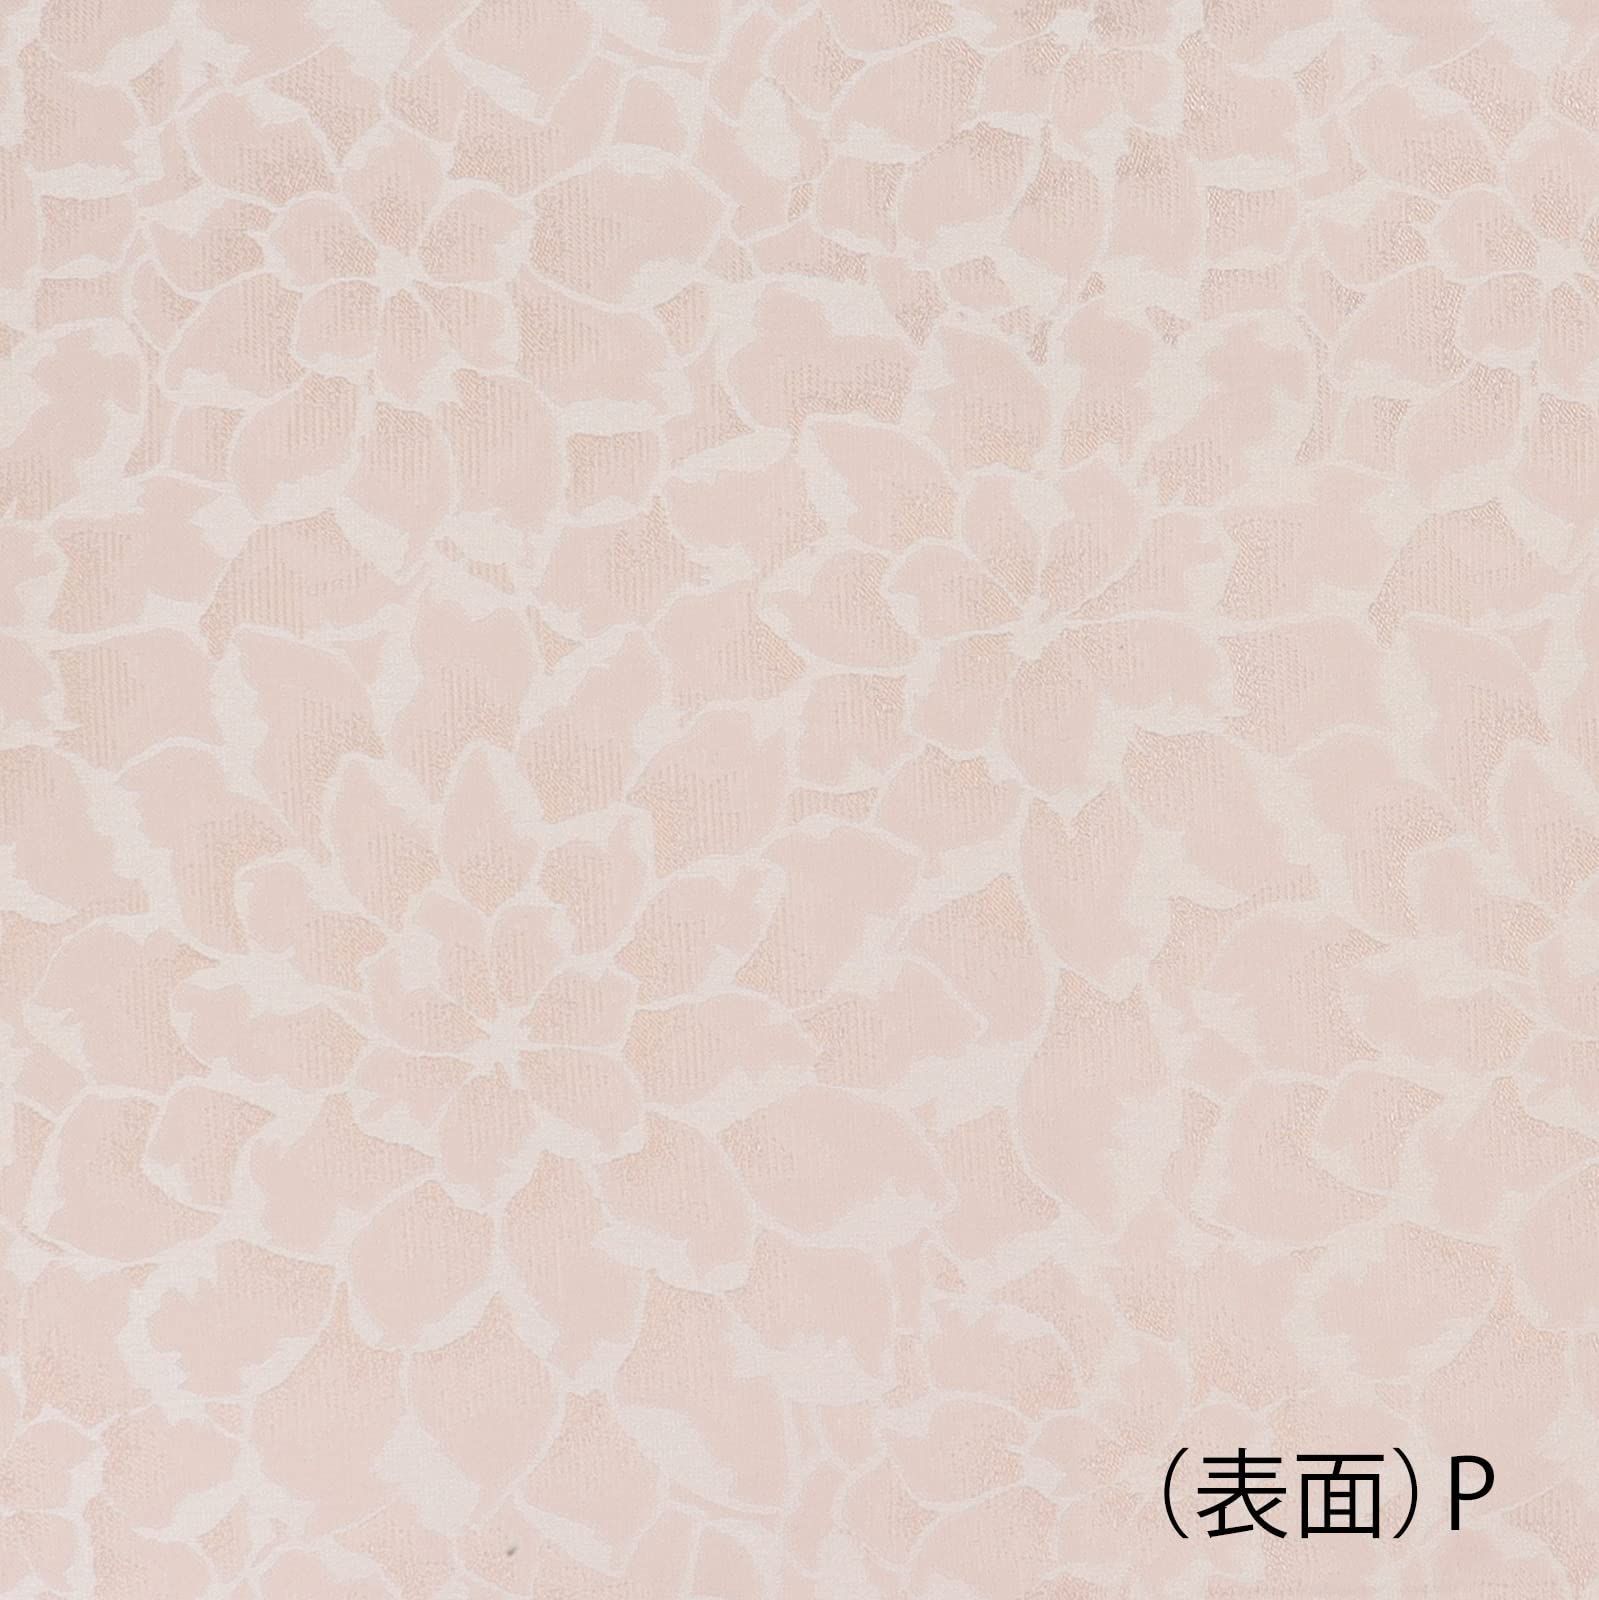 川島織物セルコン テーブルランナー フラワー ピンク 30×60cm HN130